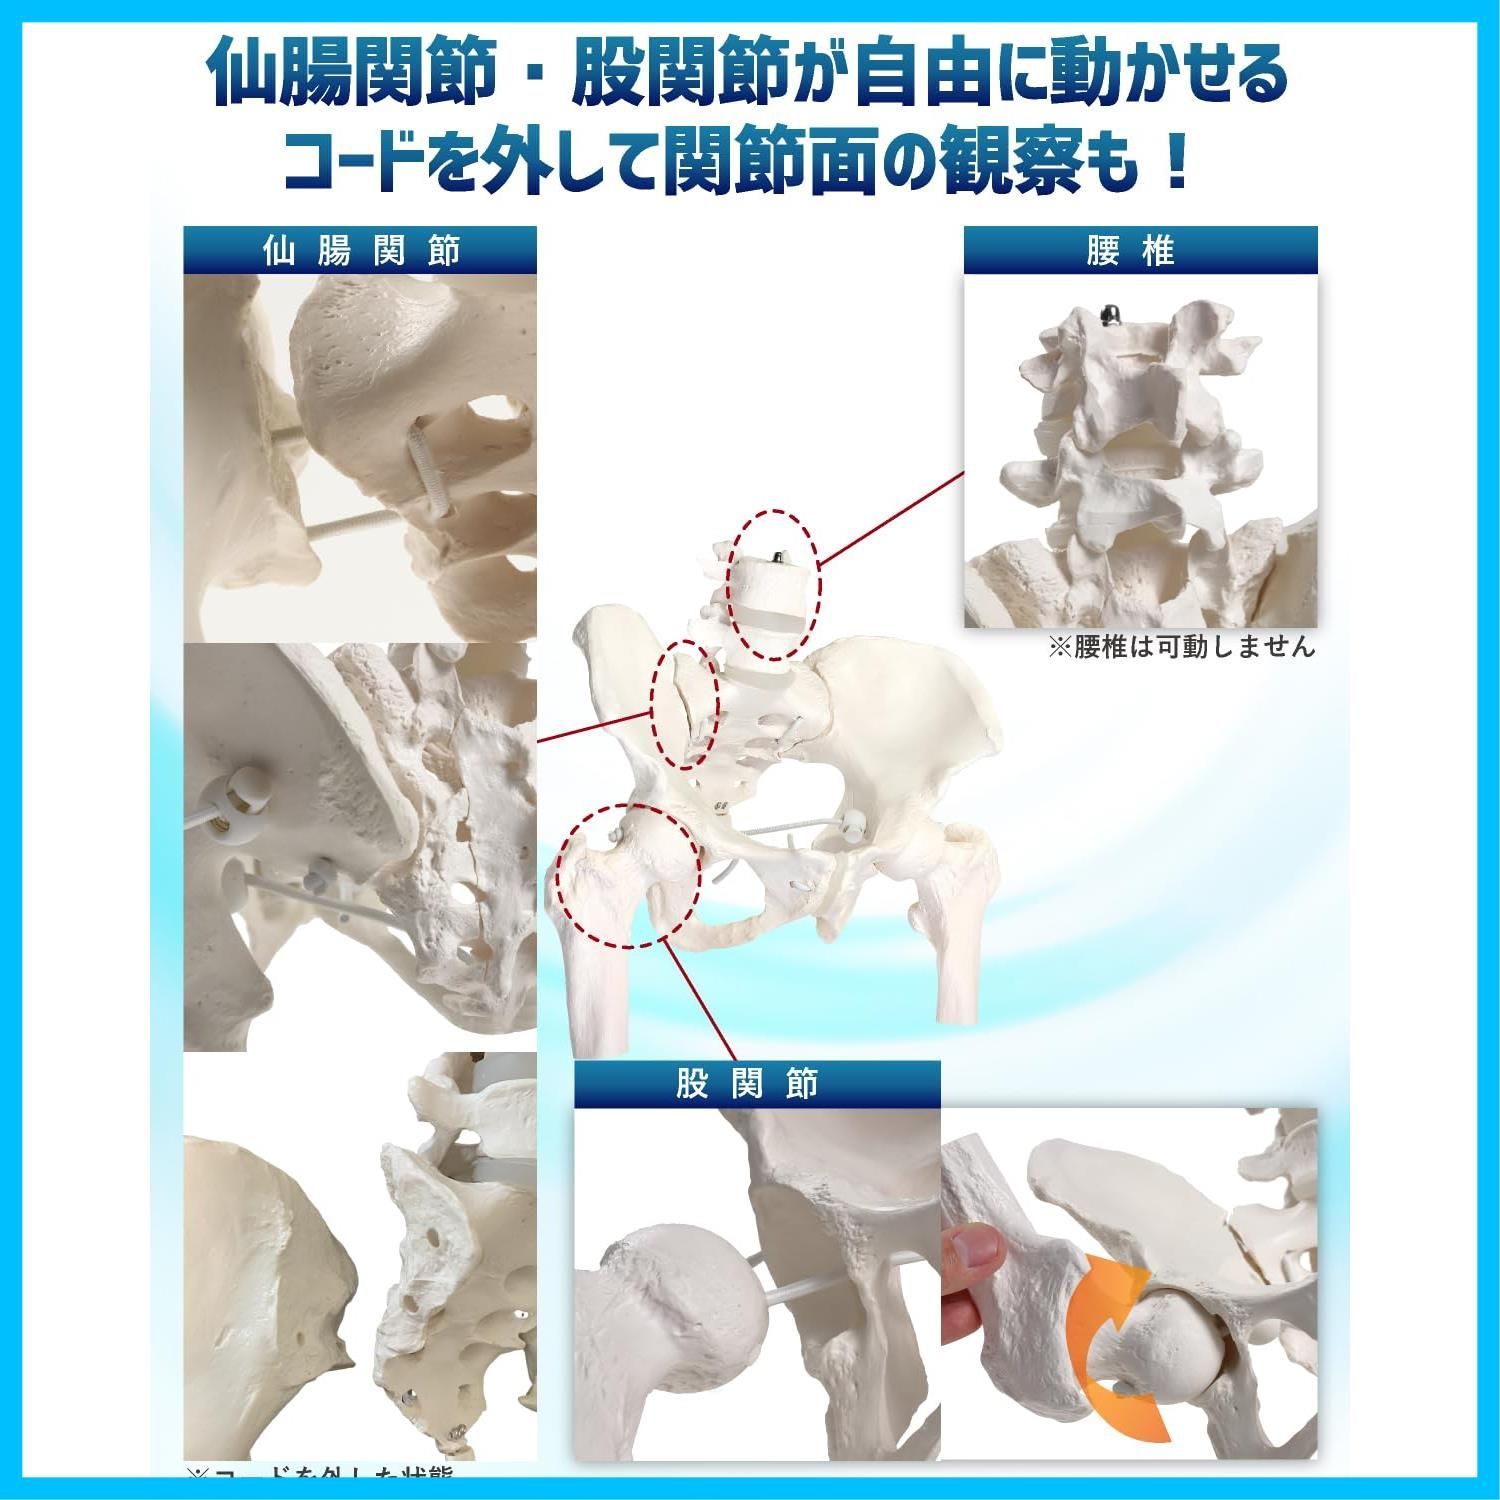 KIYOMARU グイッと動かせる大腿骨付き骨盤模型 人体模型 骨模型 理学